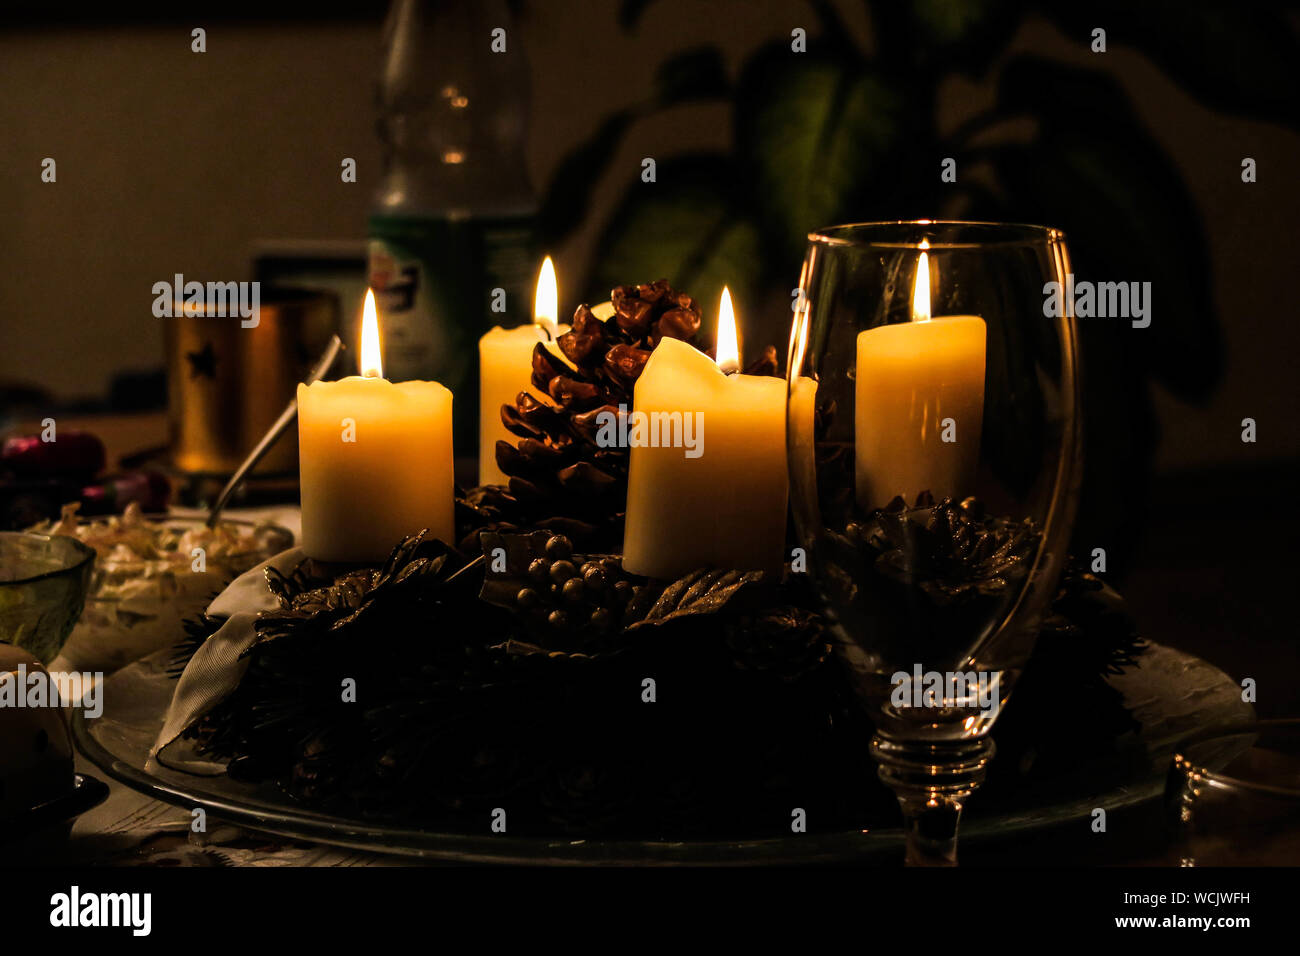 Velas que brillan intensamente en el cuarto oscuro durante la Navidad Foto de stock